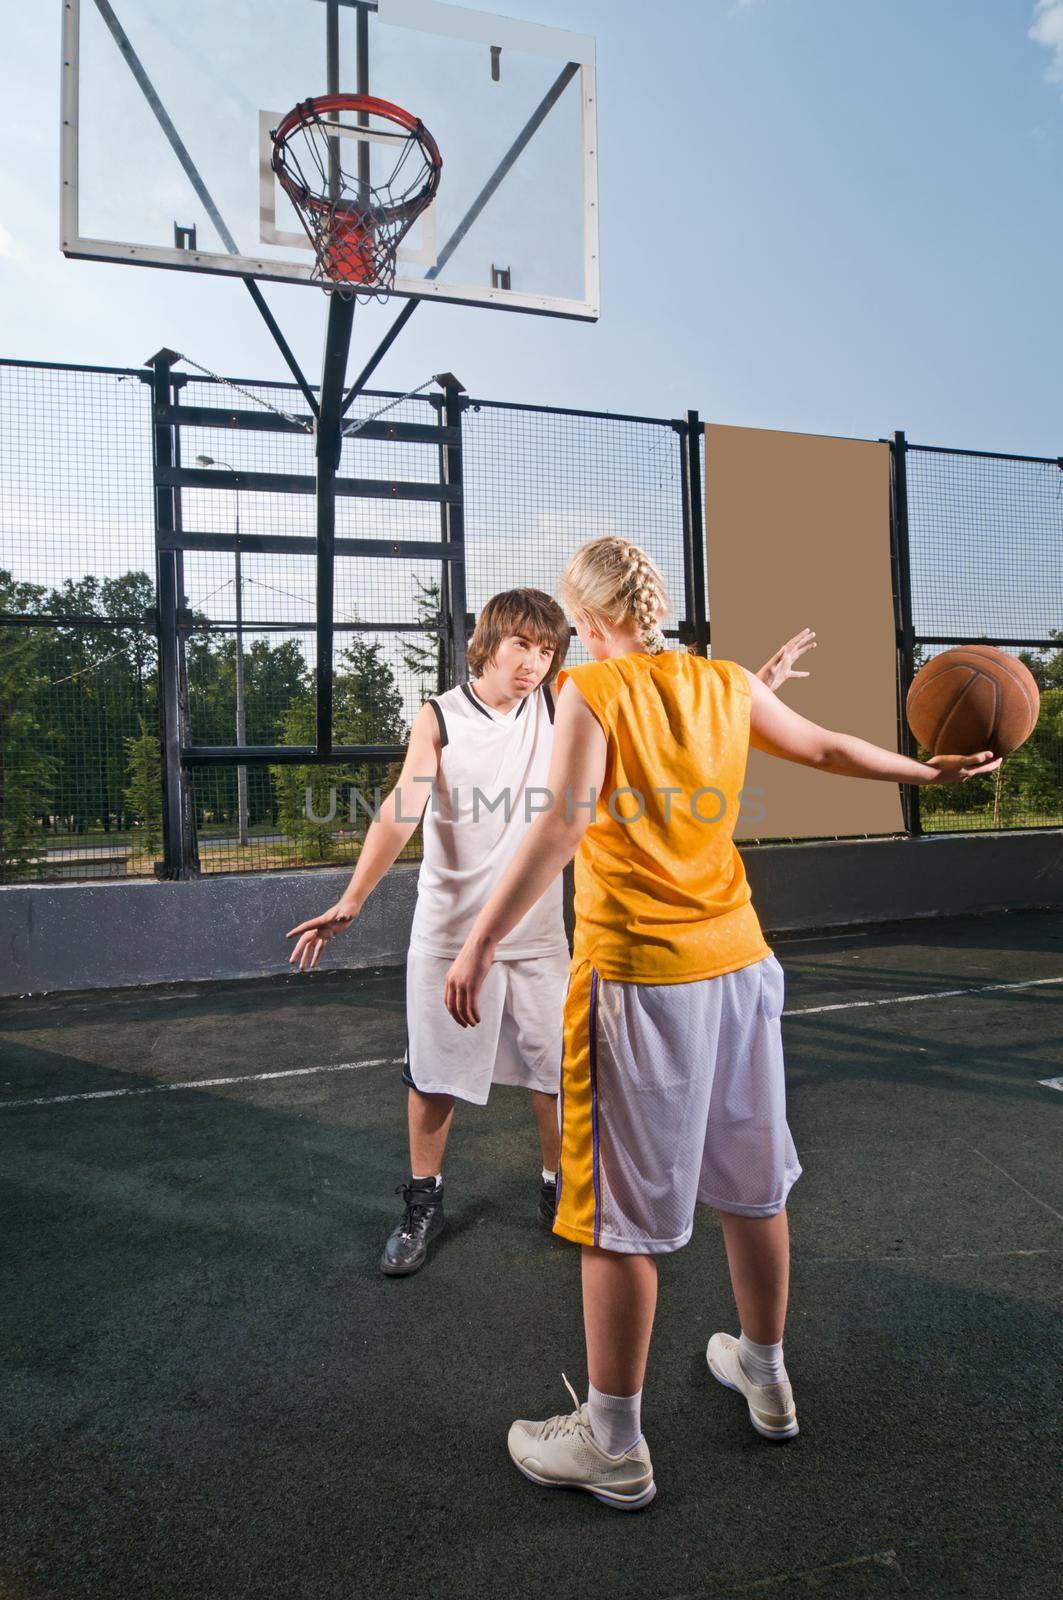 Teenagers playing basketball by nikitabuida